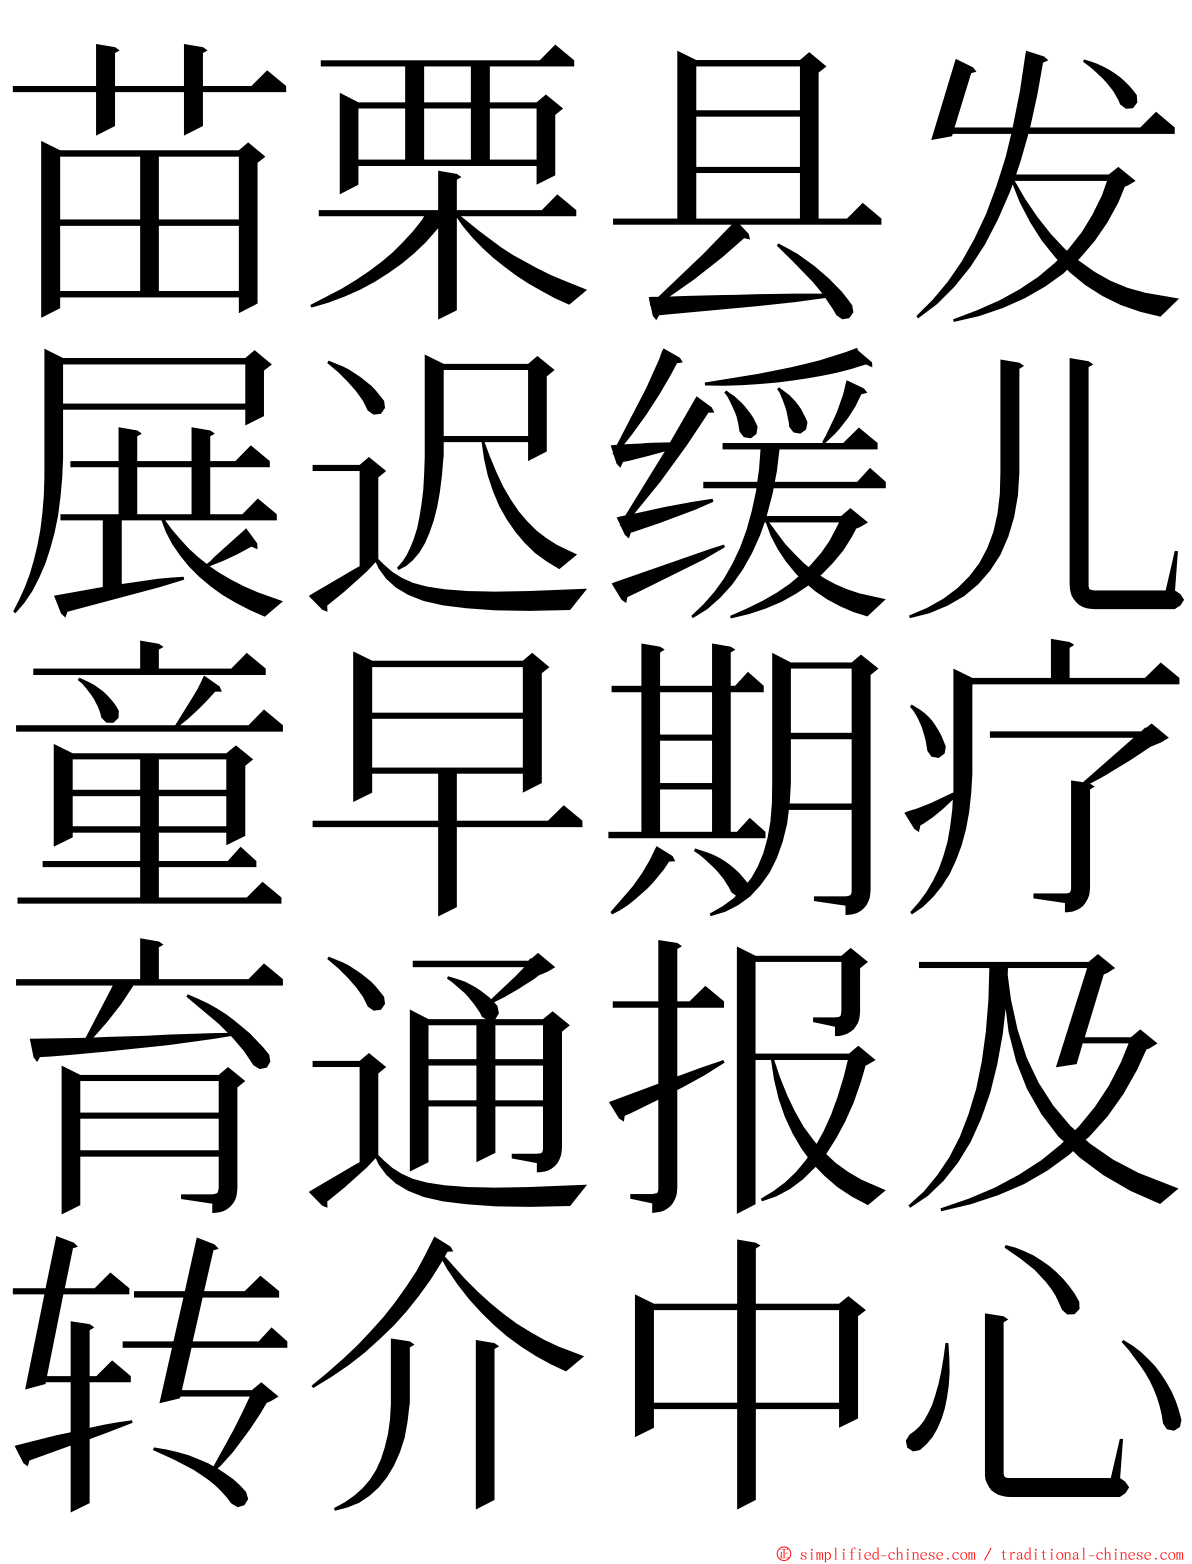 苗栗县发展迟缓儿童早期疗育通报及转介中心 ming font